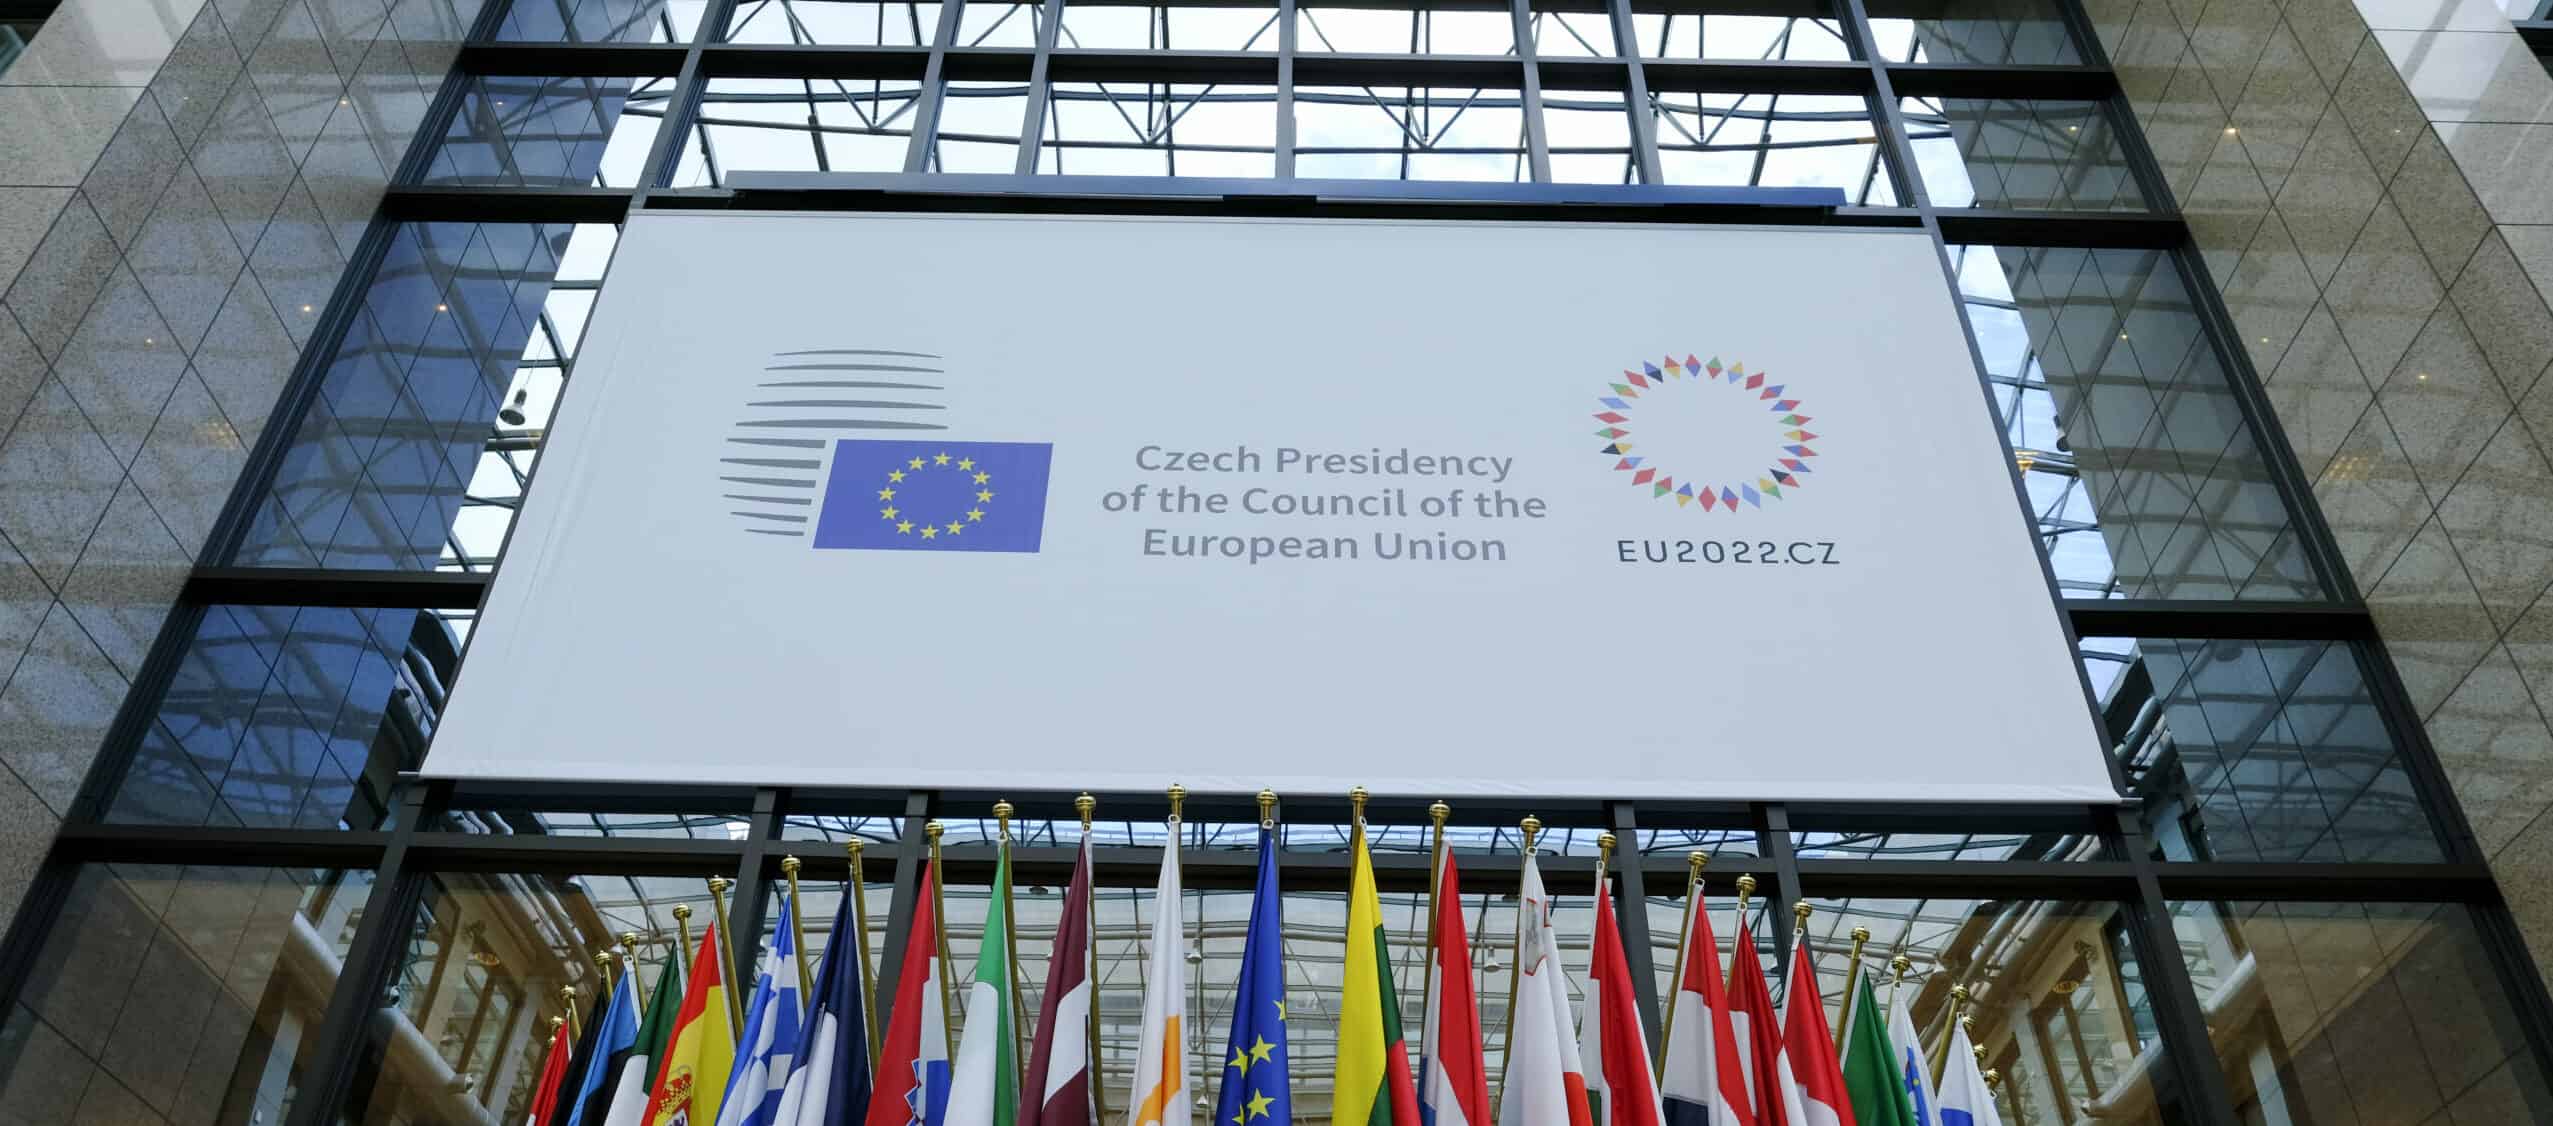 Přečtete si více ze článku Švédsko po Česku přebírá vedení Evropské unie